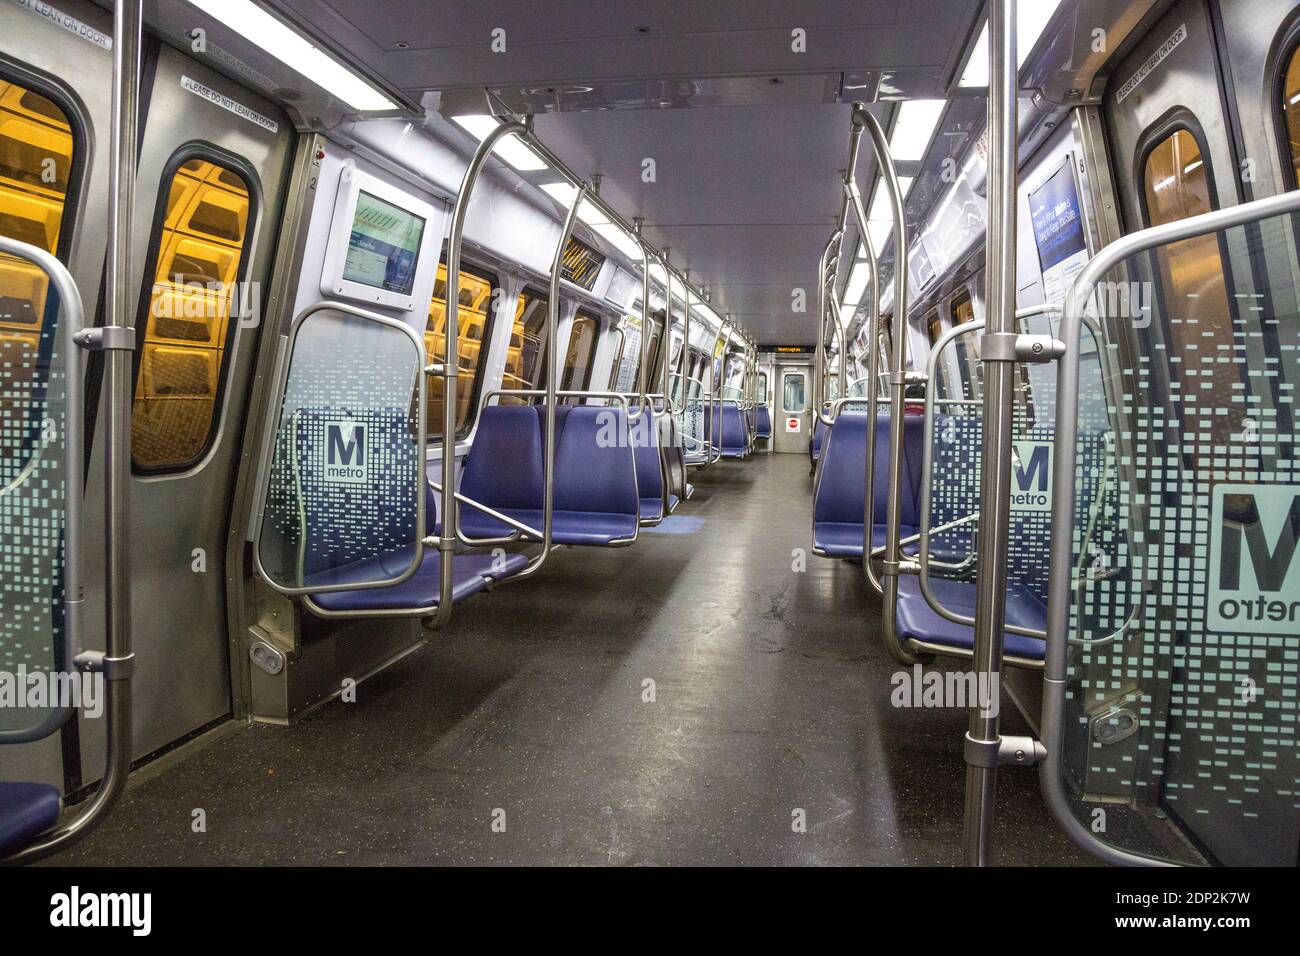 Washington DC Metro System Railcar durante la pandemia de Coronavirus COVID. Foto de stock